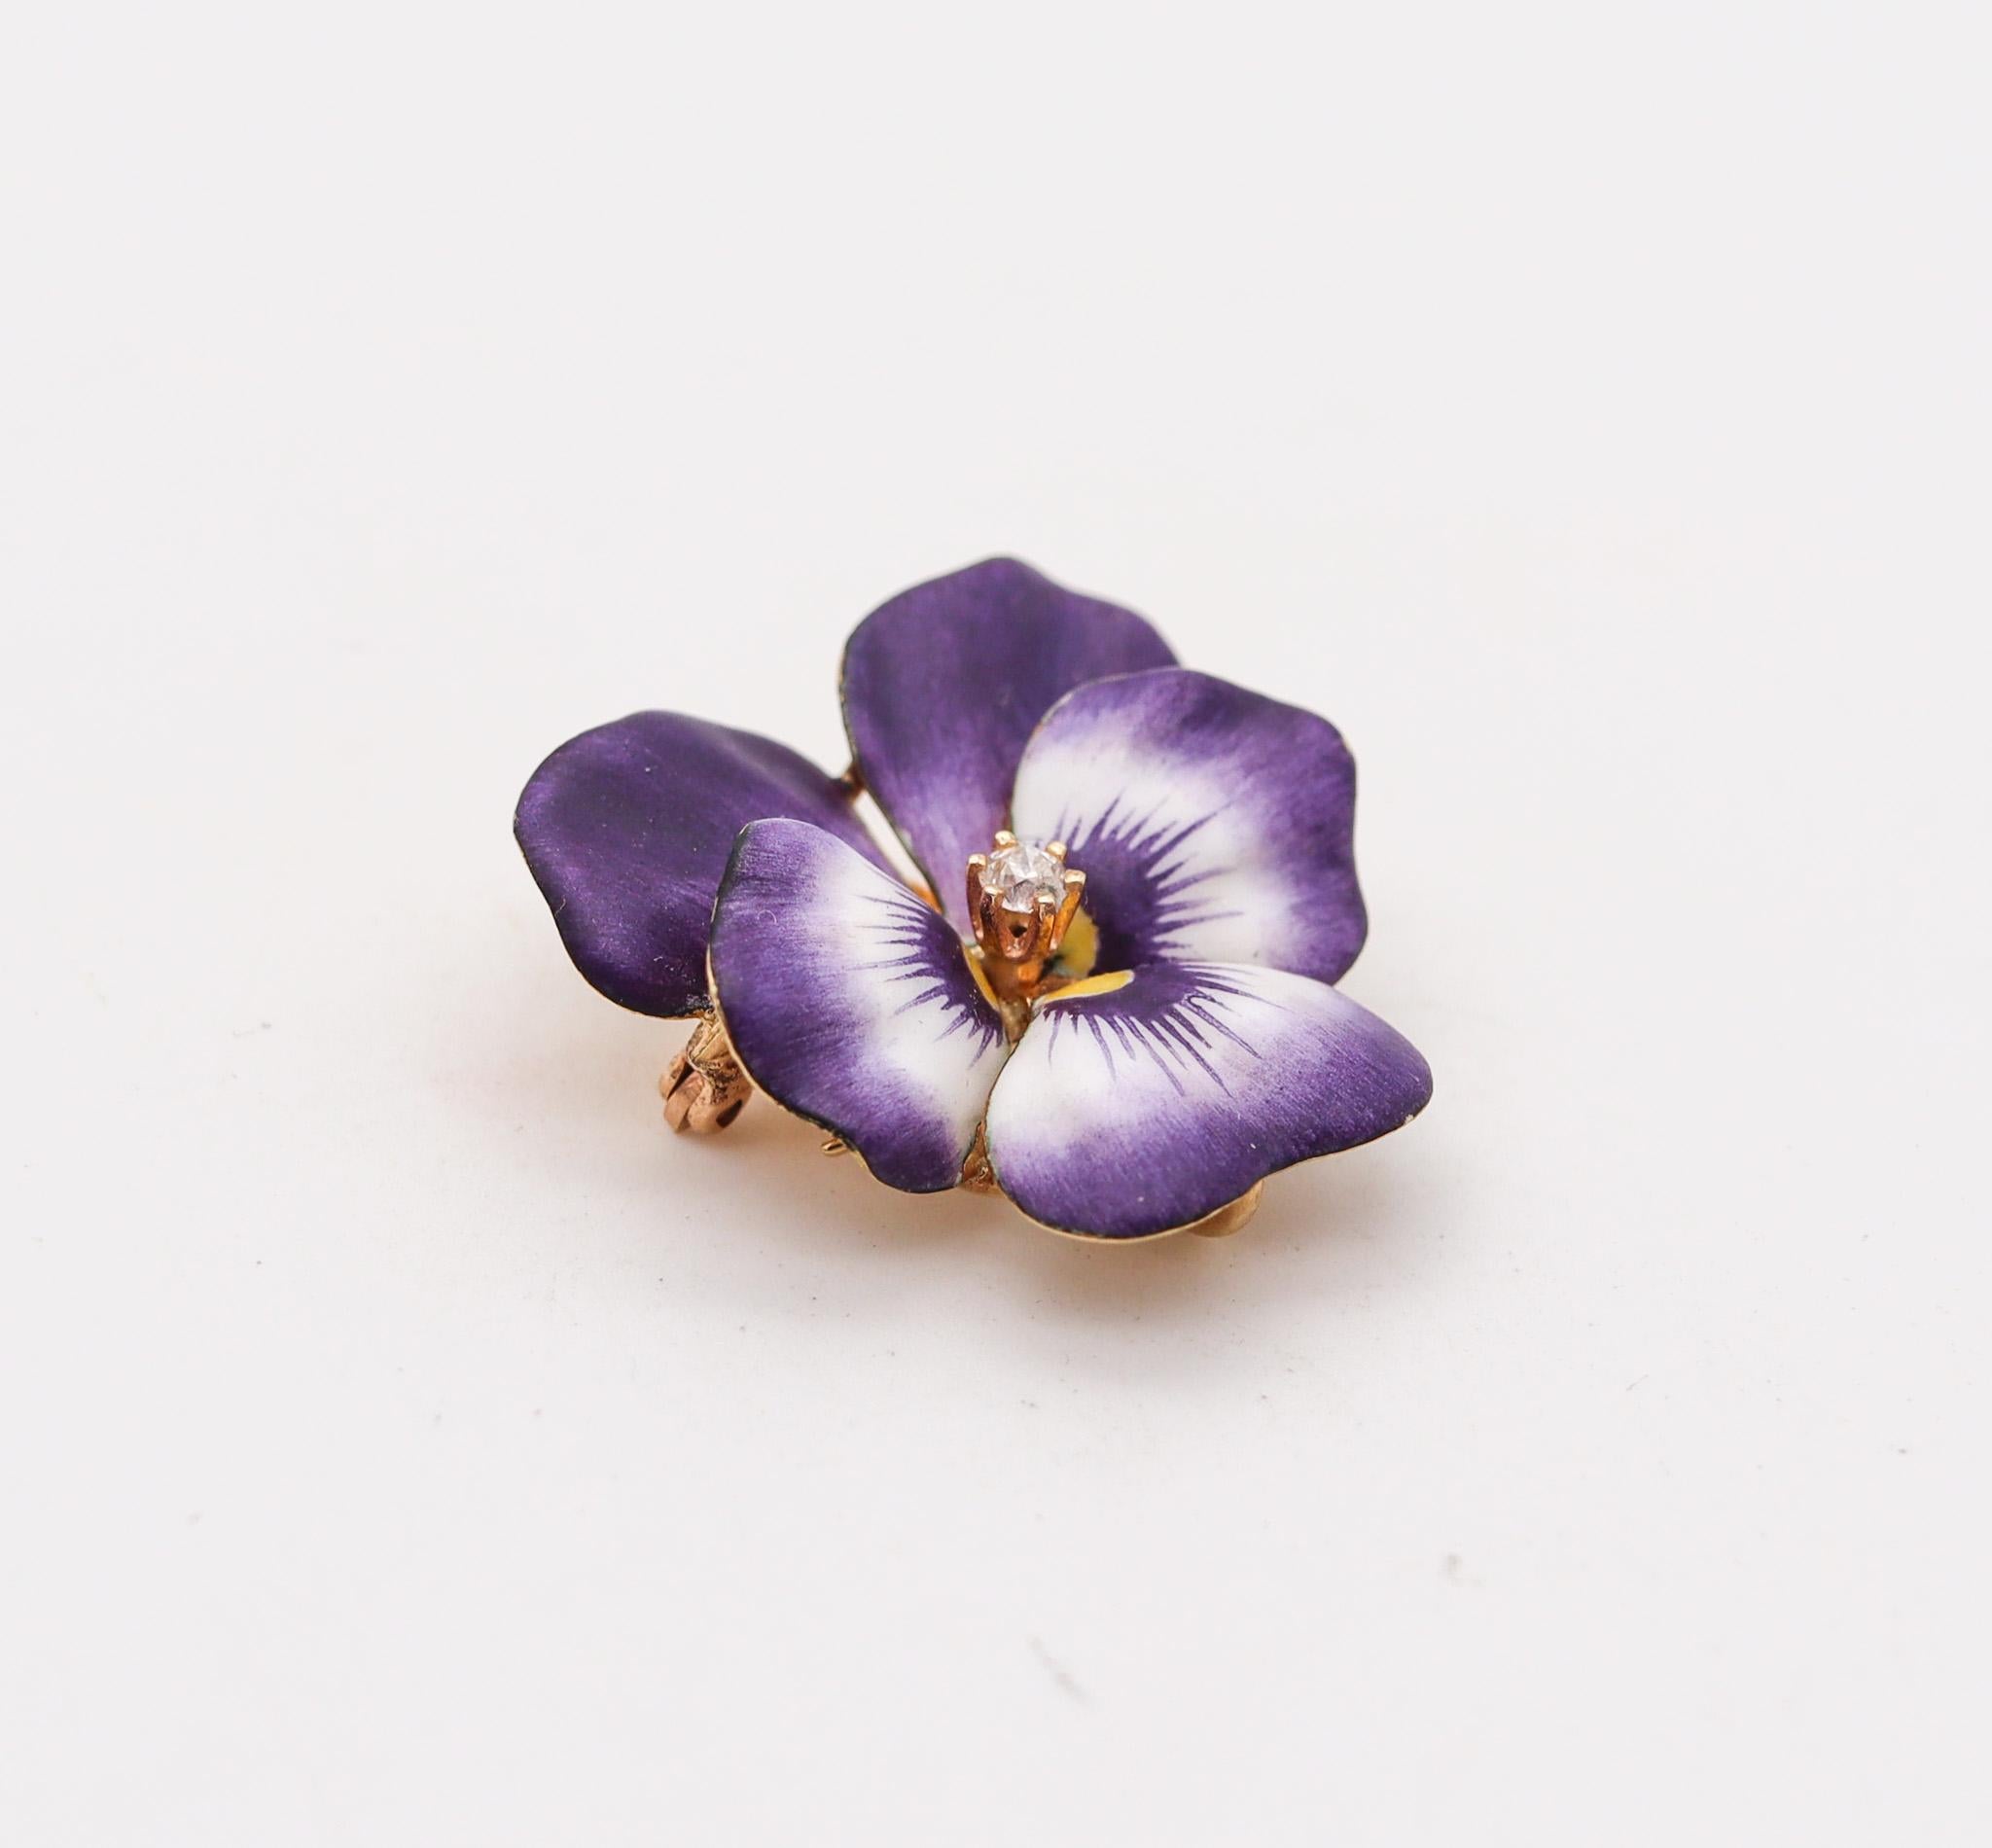 Edwardian emailliert lila Stiefmütterchen Blume Anhänger-Brosche.

Schön  Stiefmütterchenblume, die in Newark in den Vereinigten Staaten während der Edwardianischen und der Jugendstilzeit um 1900 entstand. Diese wunderschöne, wandelbare